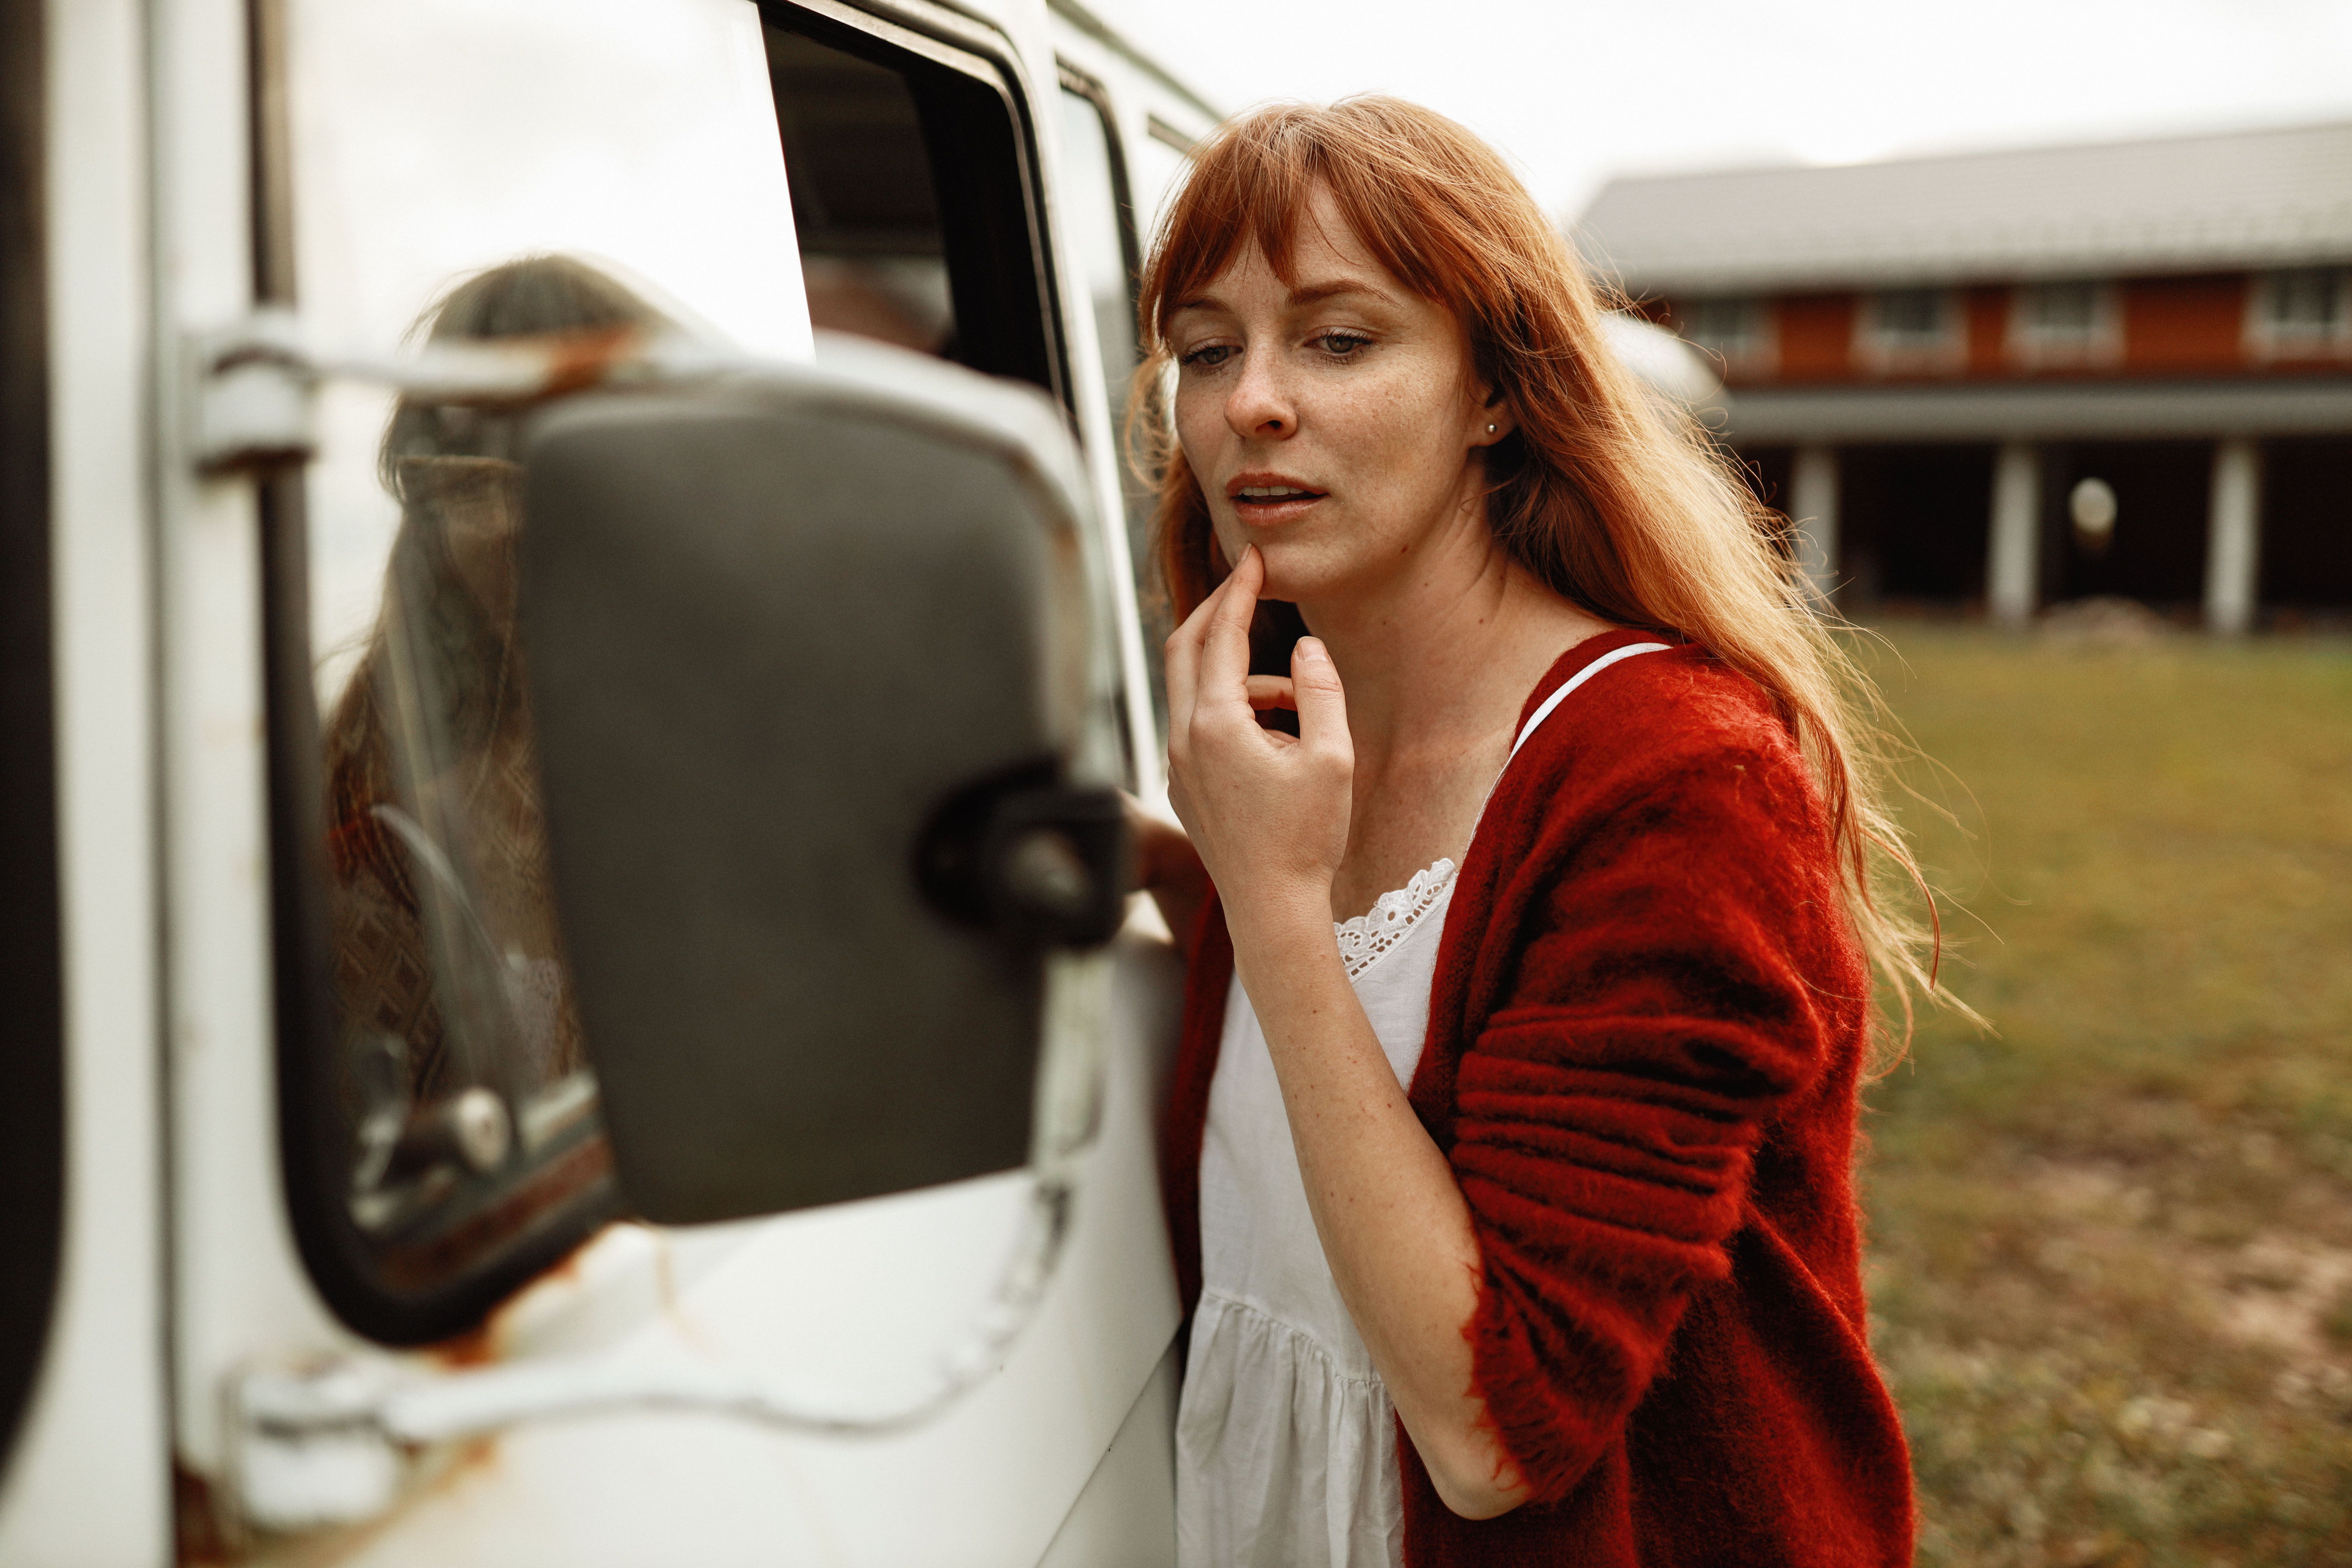 село деревня девушка рыжая осень автобус зеркало веснушки взгляд губы, Марина Еленчук